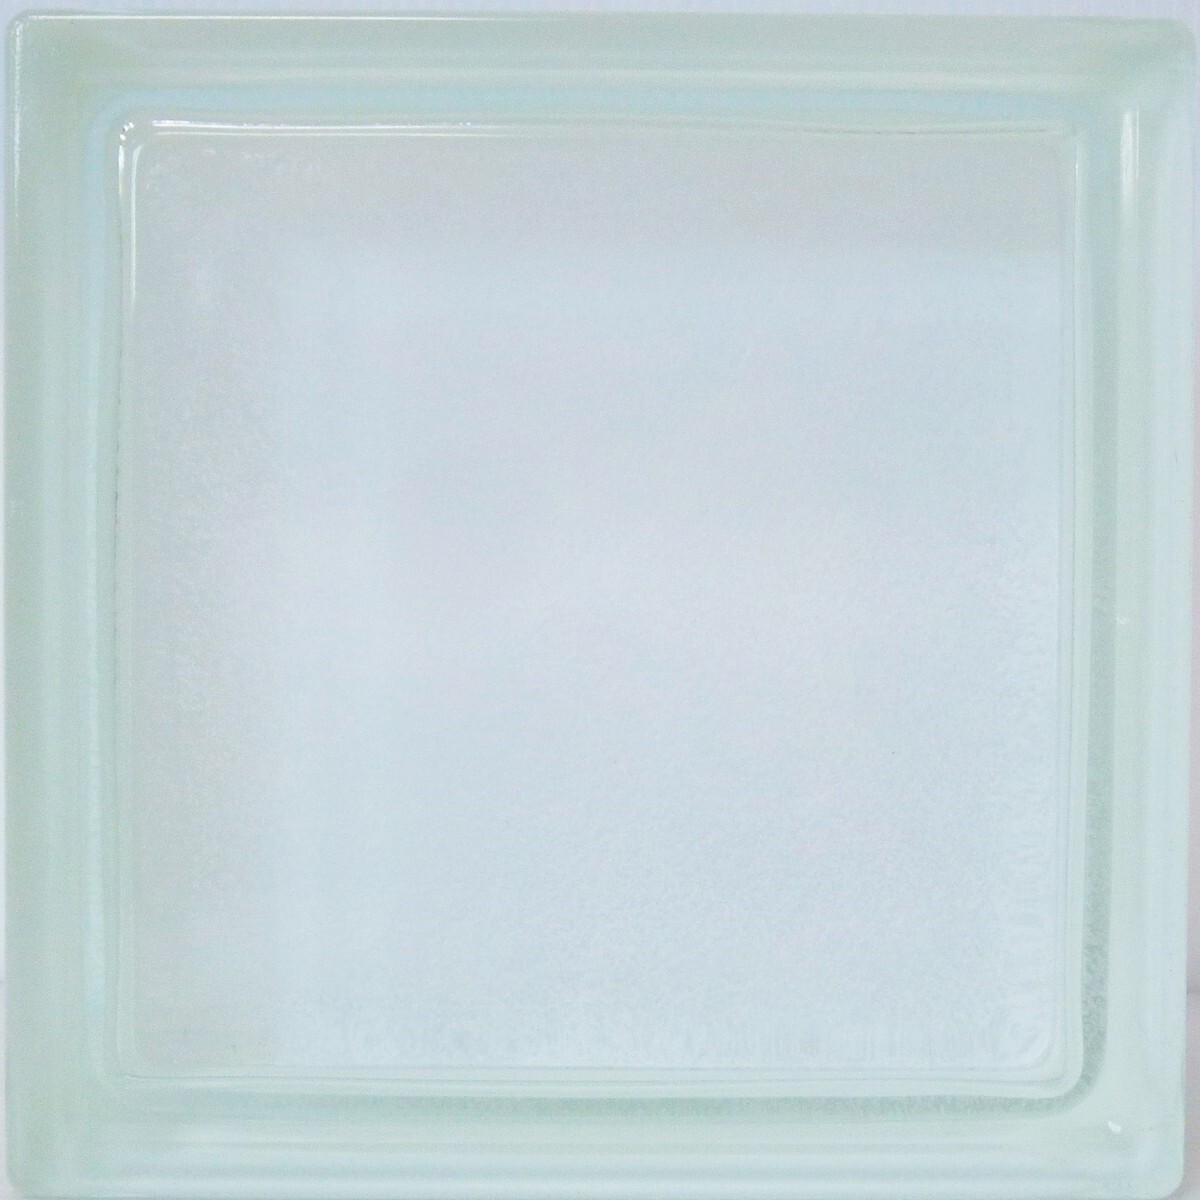 8個セット 送料無料 ガラスブロック 日本電気ガラス アメリカ産 厚み95mmクリア色和紙ダイレクトgb29995-8p